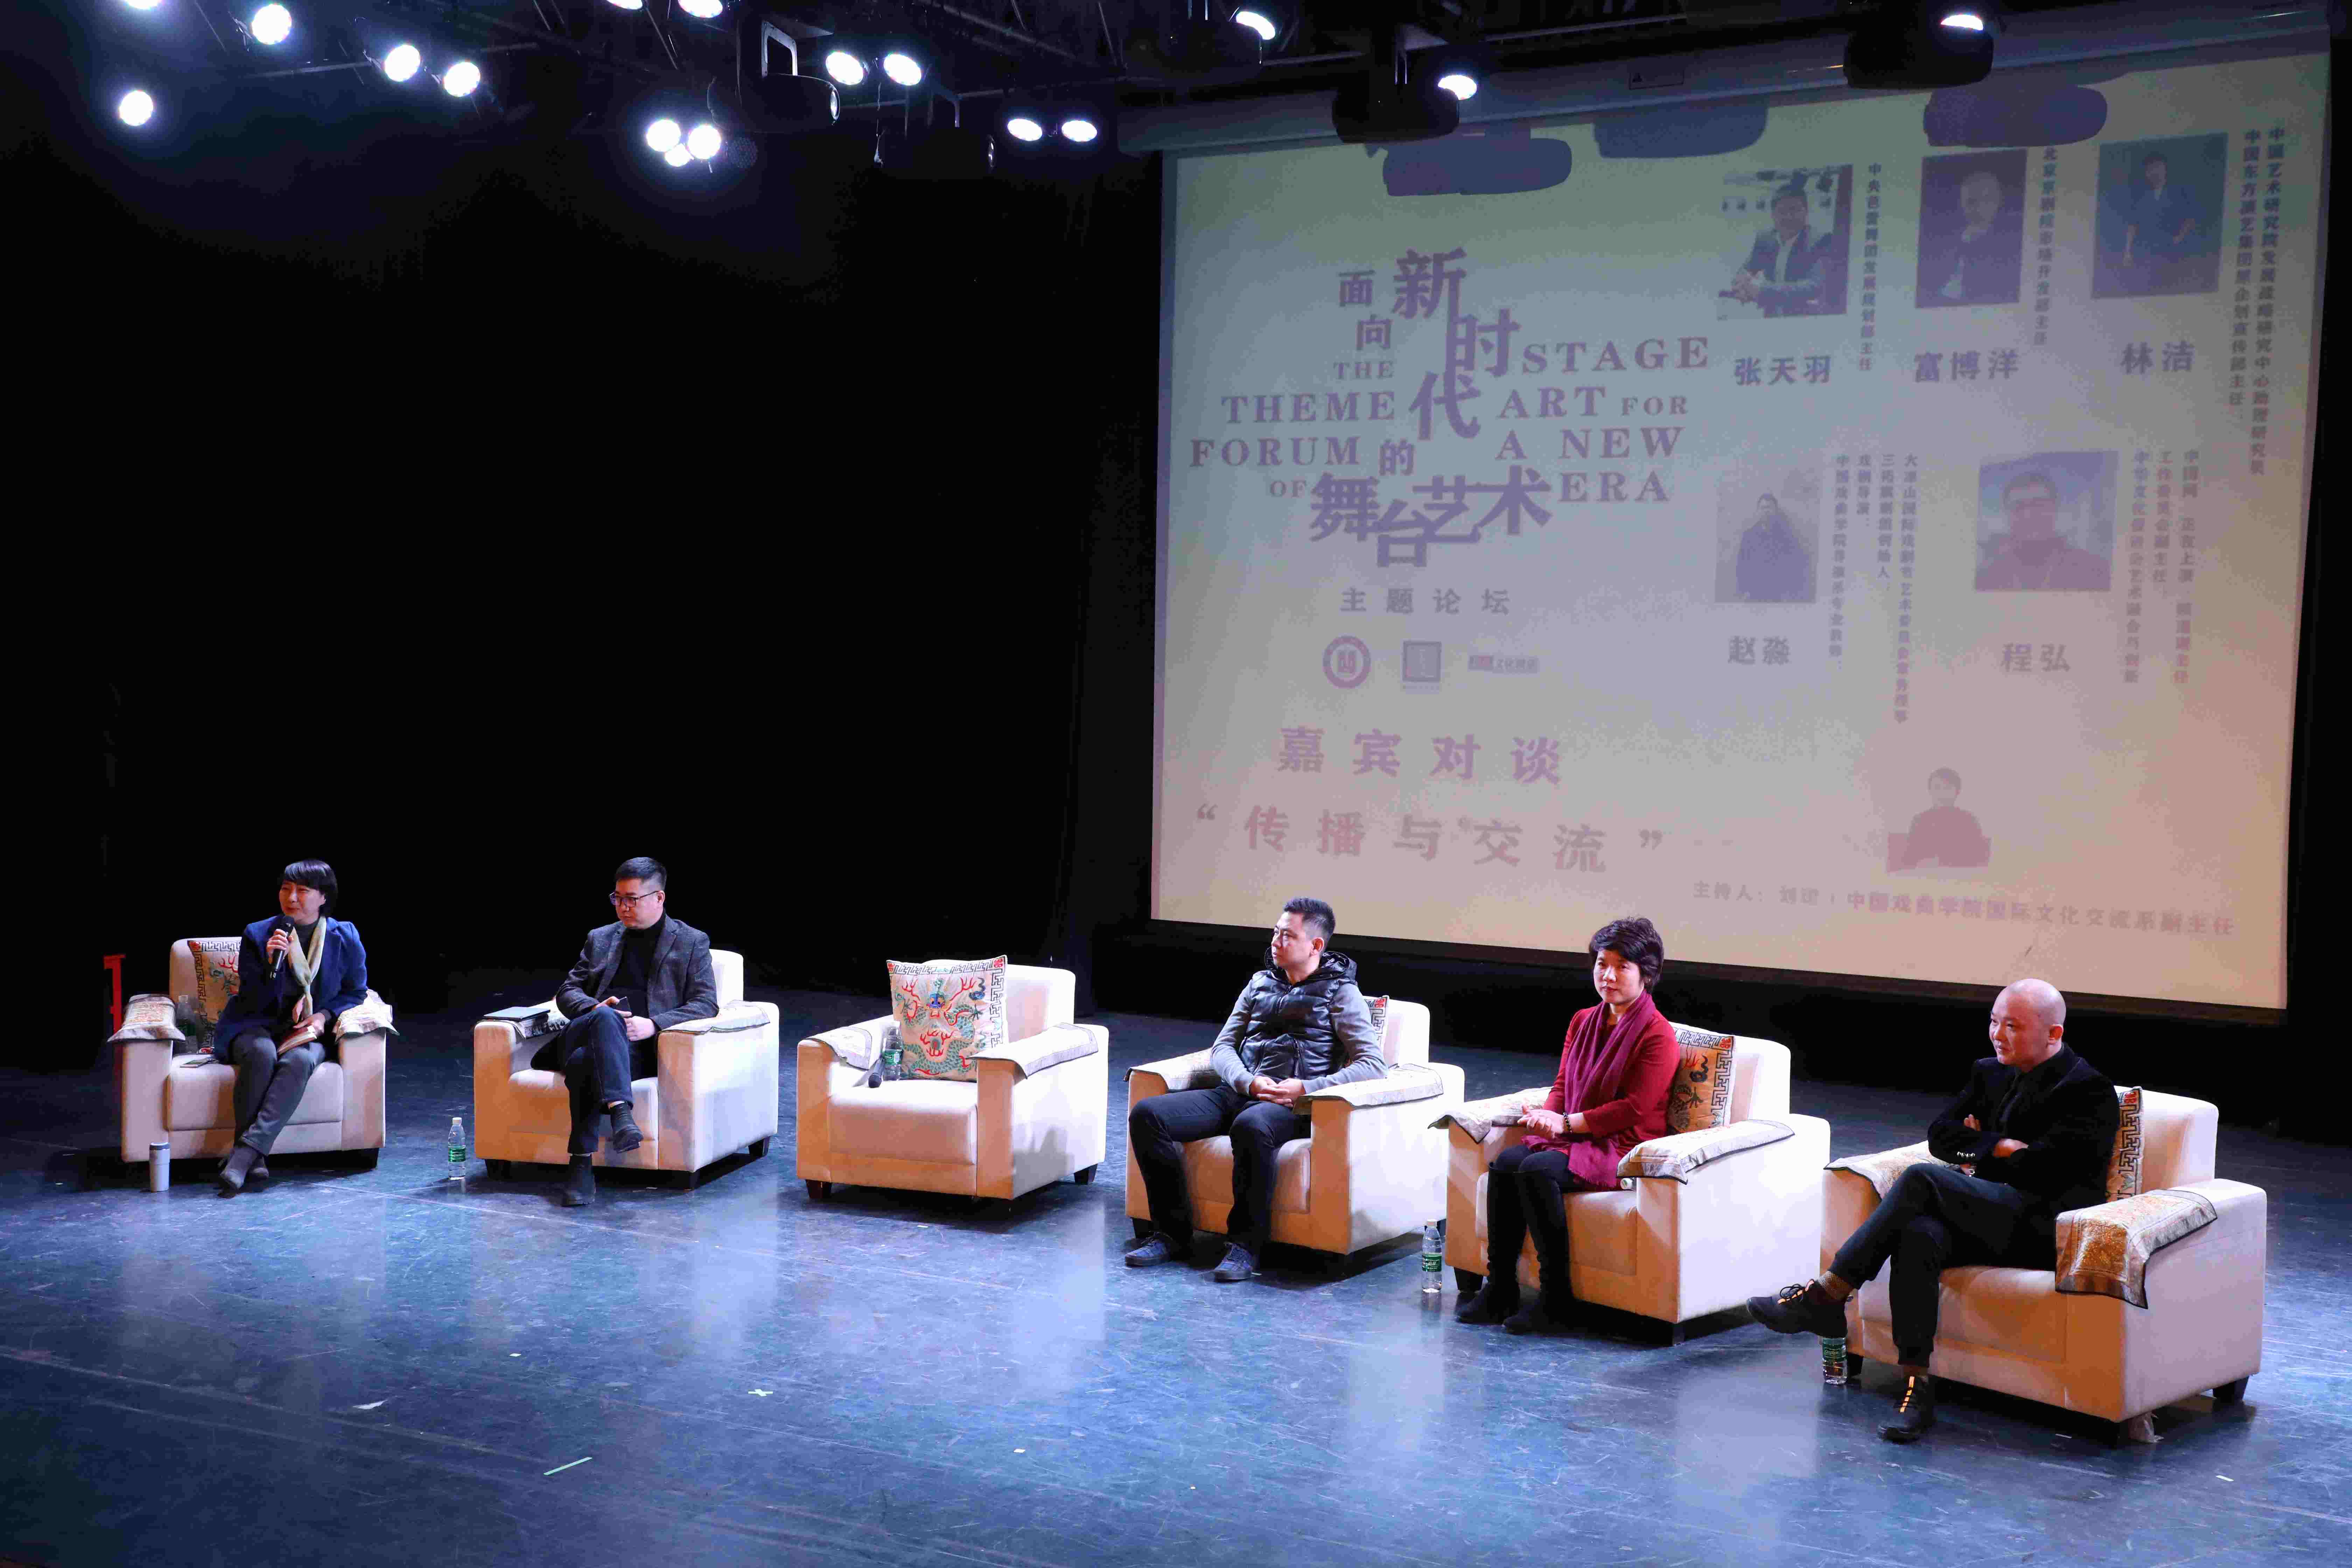 一次让城市兴奋起来的文化事件:广州设计周特别项目 “城市艺向”11月26日广州开